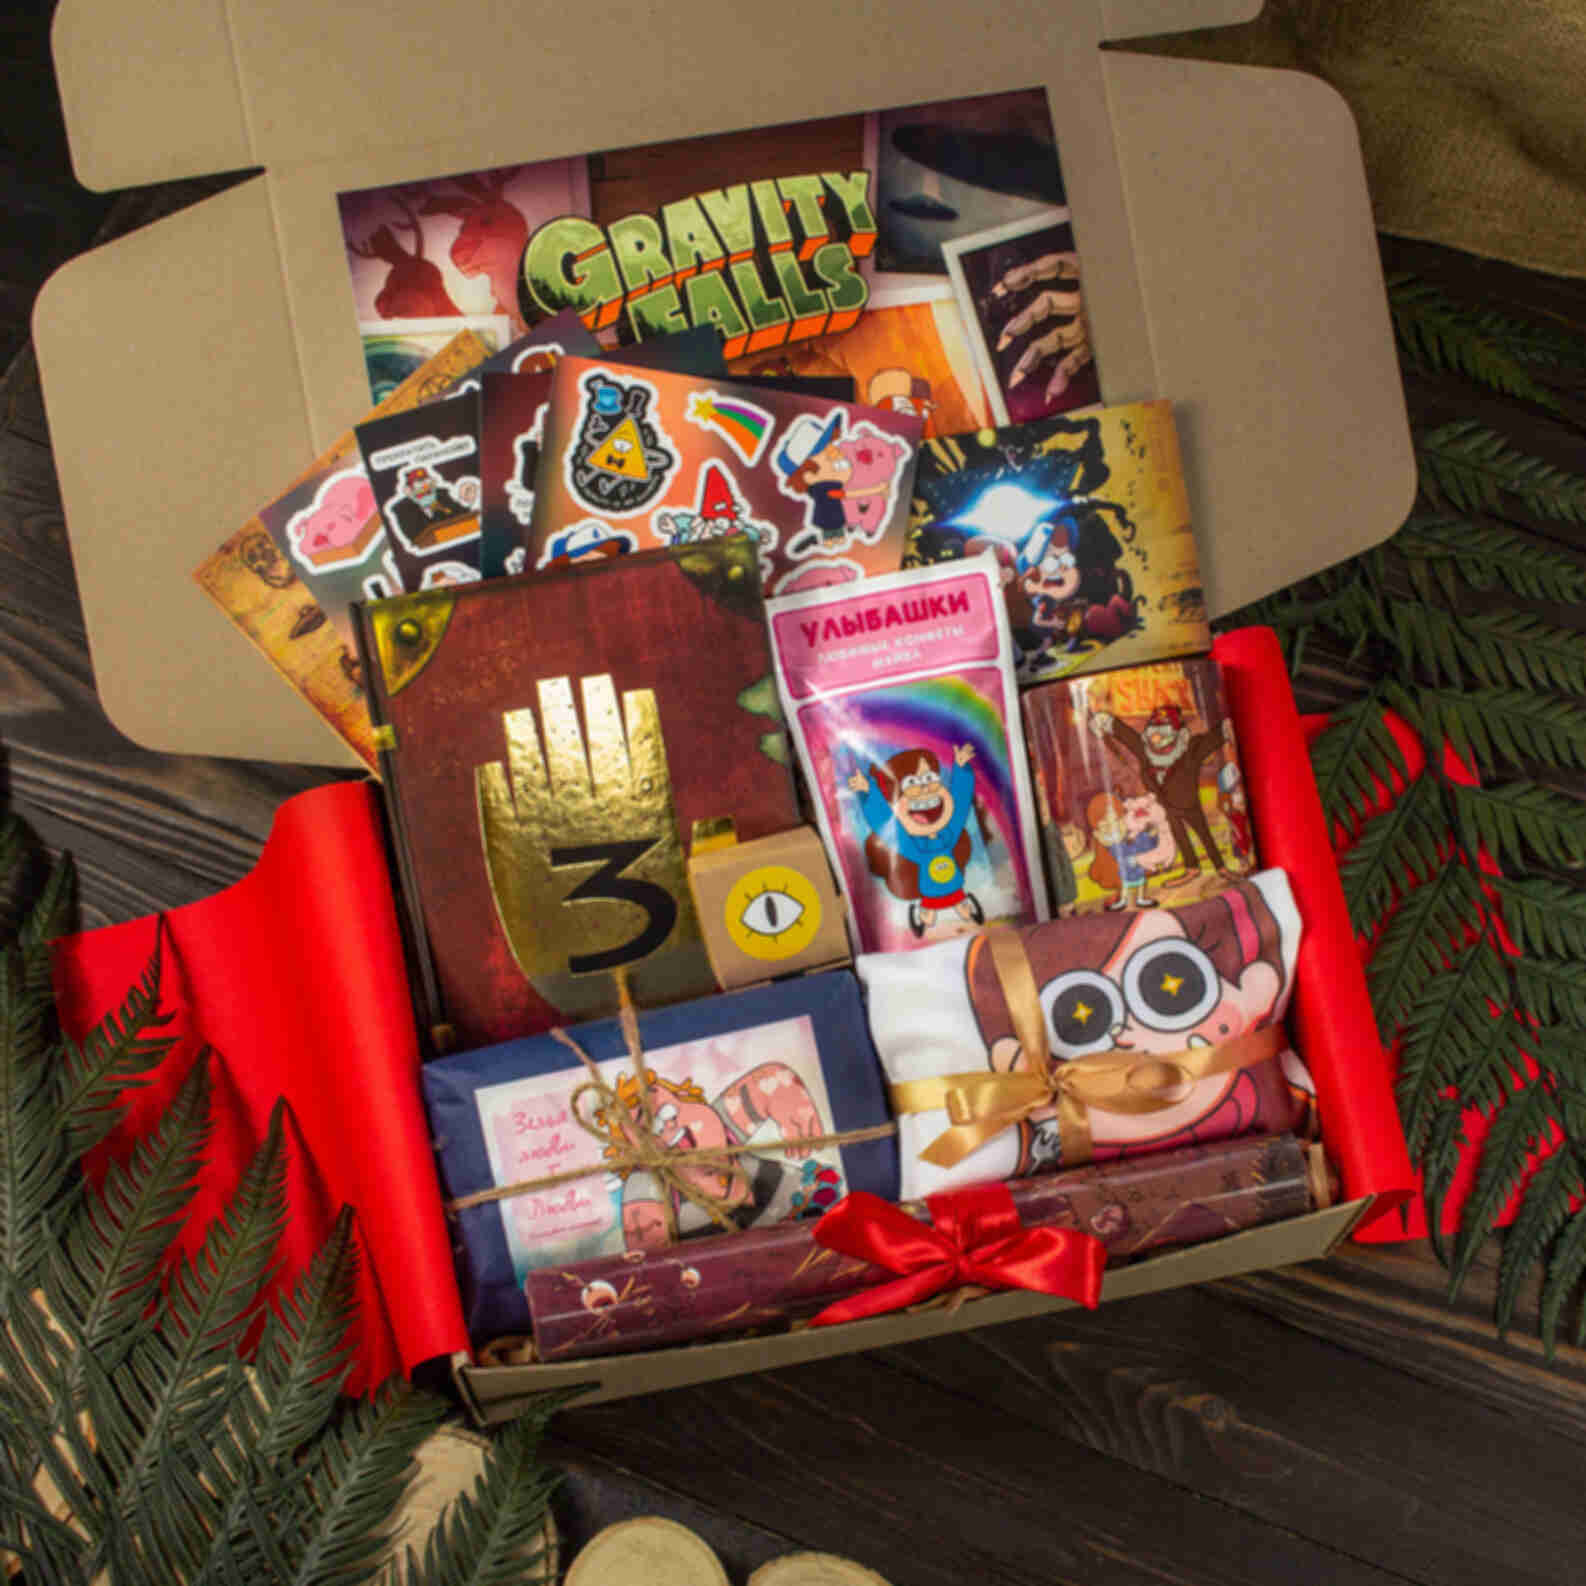 Бокс Гравіті Фолз • max • Подарунковий набір для фанатів серіалу Gravity Falls